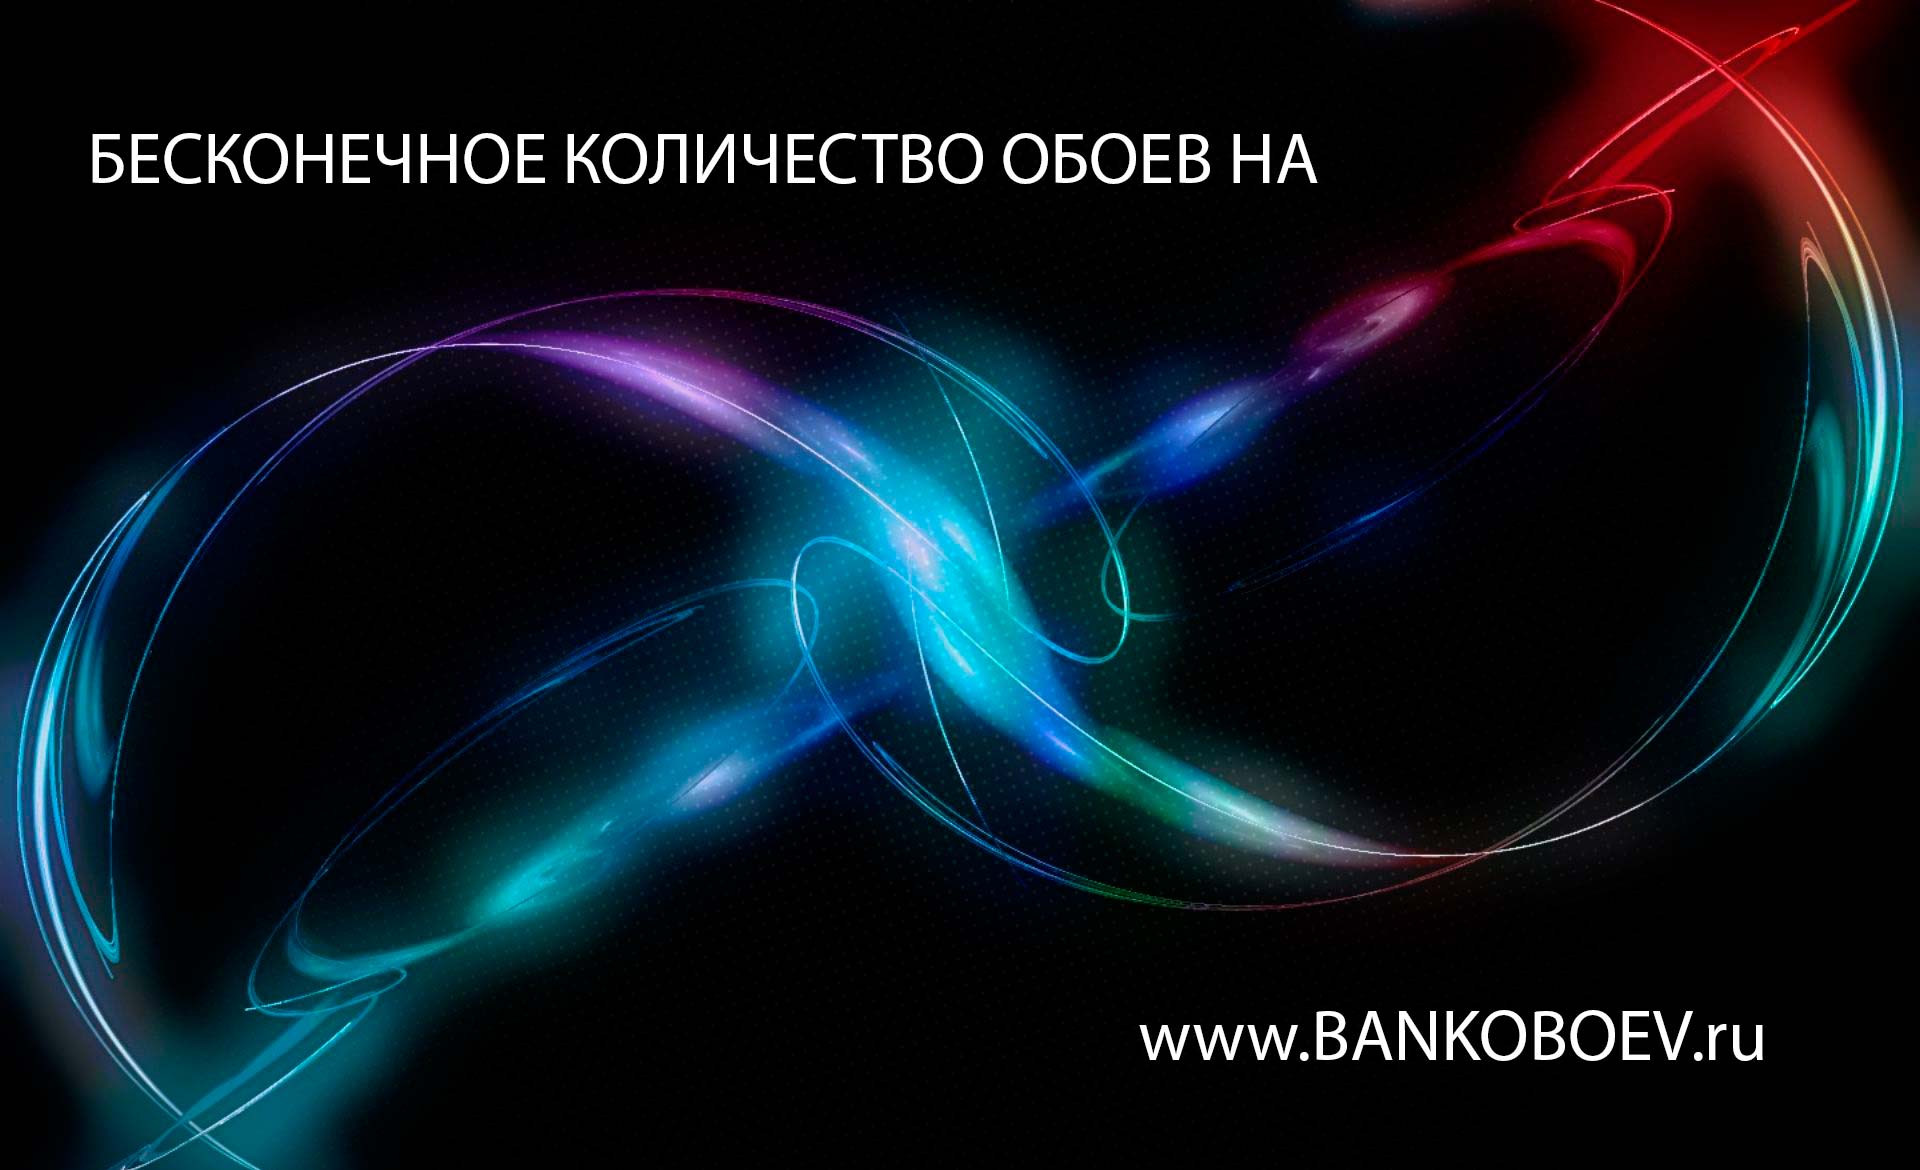 Source Bankoboev Ru Image Otc4mzy